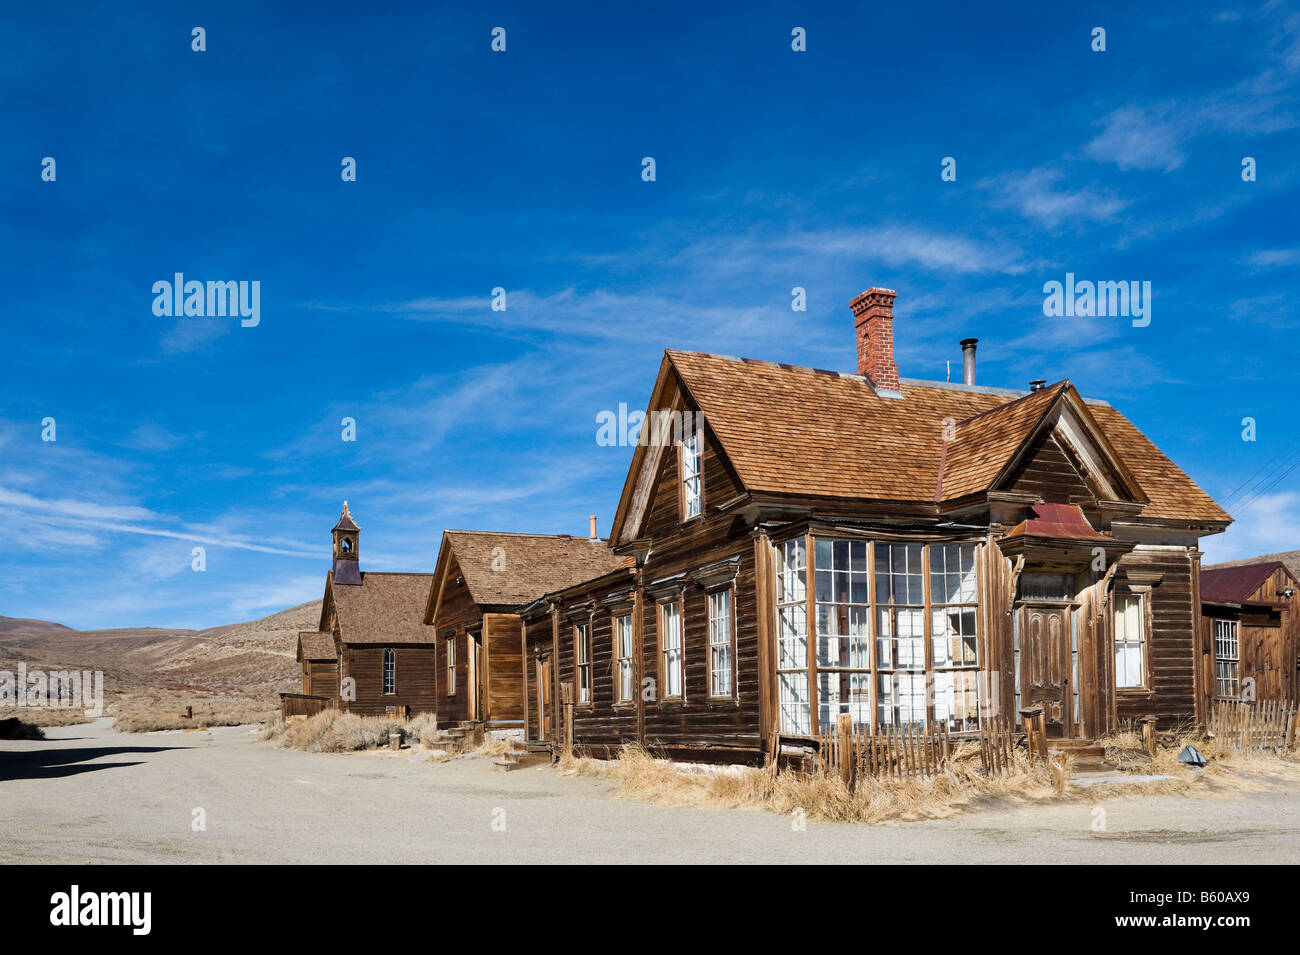 J S Cain House, Green Street, 19thC gold mining ville fantôme de Bodie près de Bridgeport, la Sierra Nevada, en Californie, USA Banque D'Images